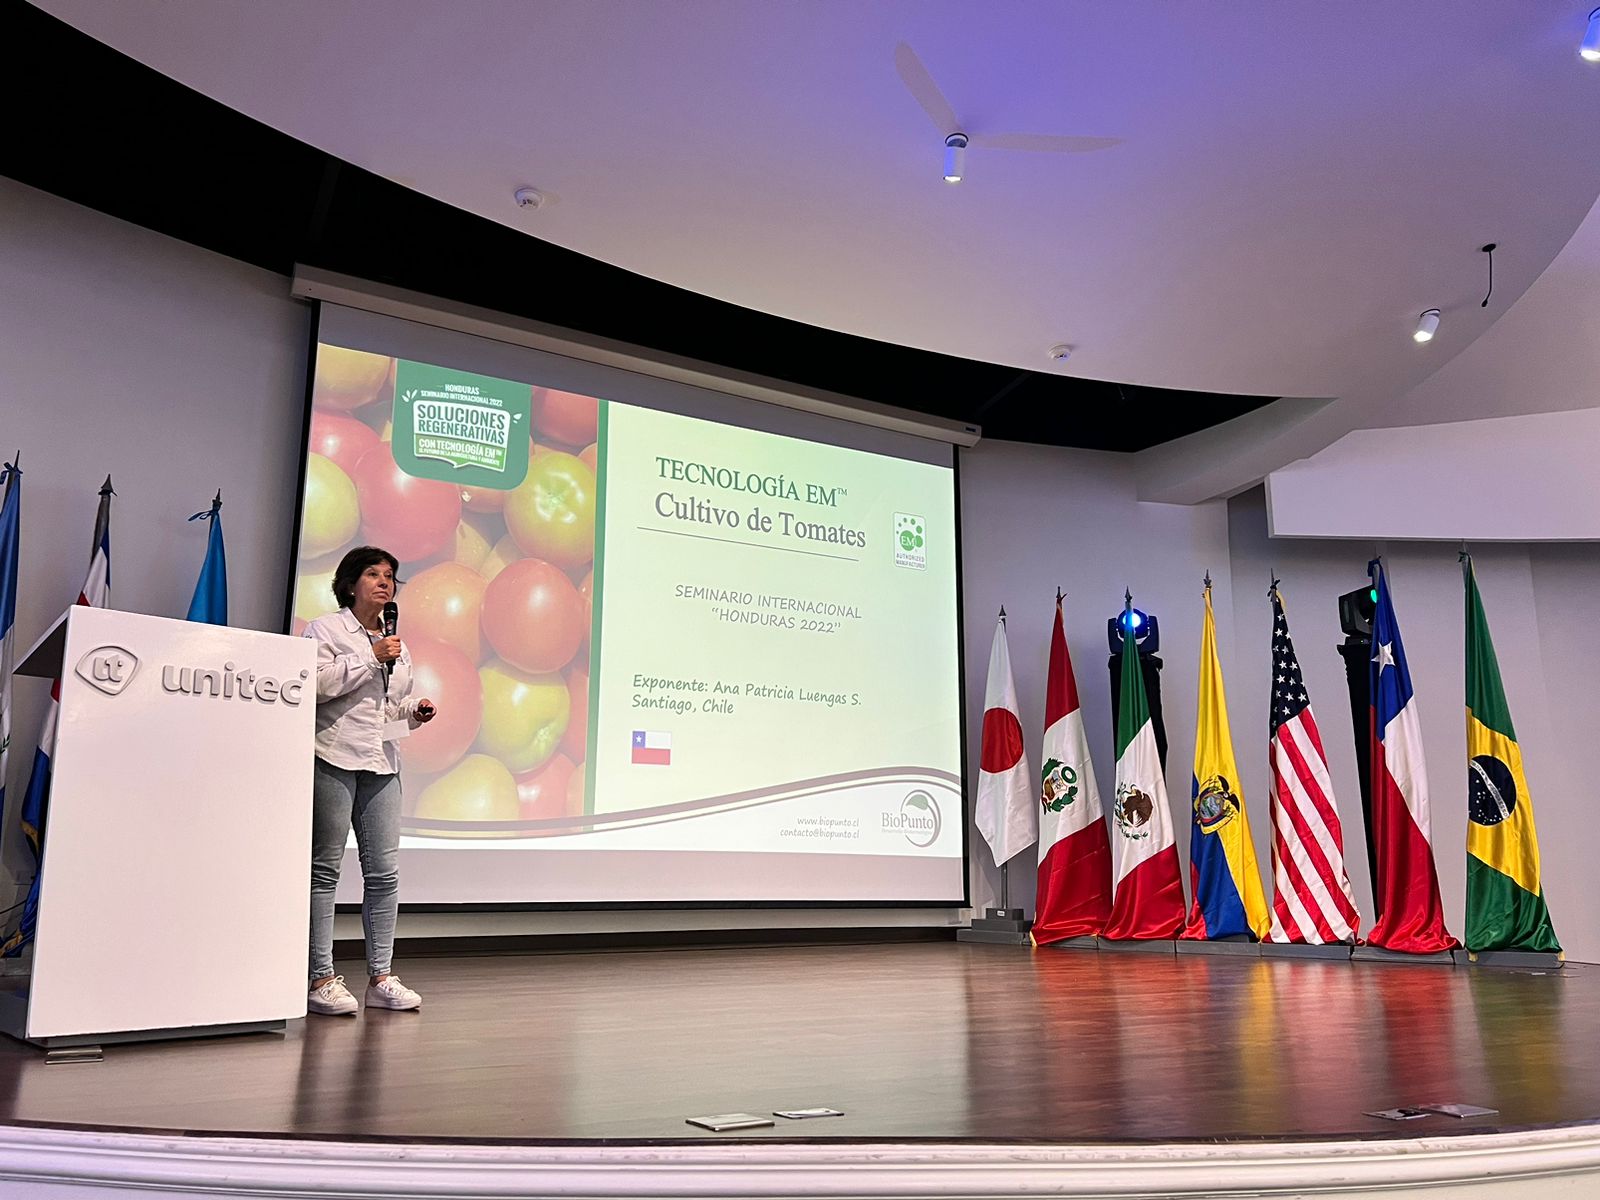 Representando a Chile en el seminario internacional “Soluciones regenerativas con Tecnología EM”